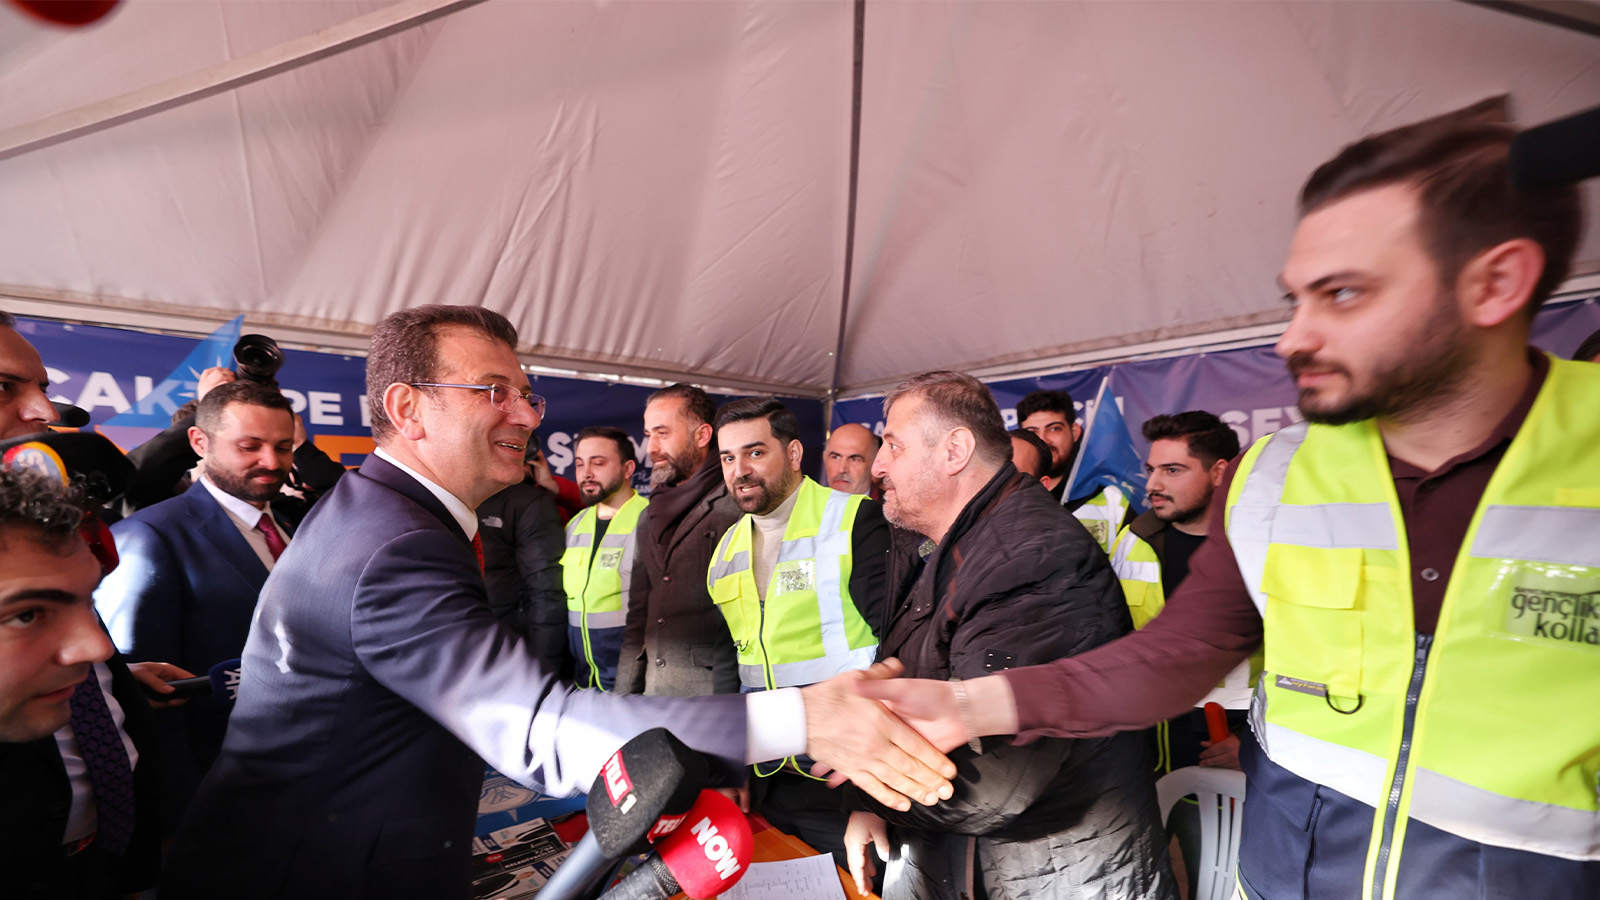 İmamoğlu, AKP'nin seçim çadırını ziyaret etti: Ne kadar çok istiyorsunuz beni